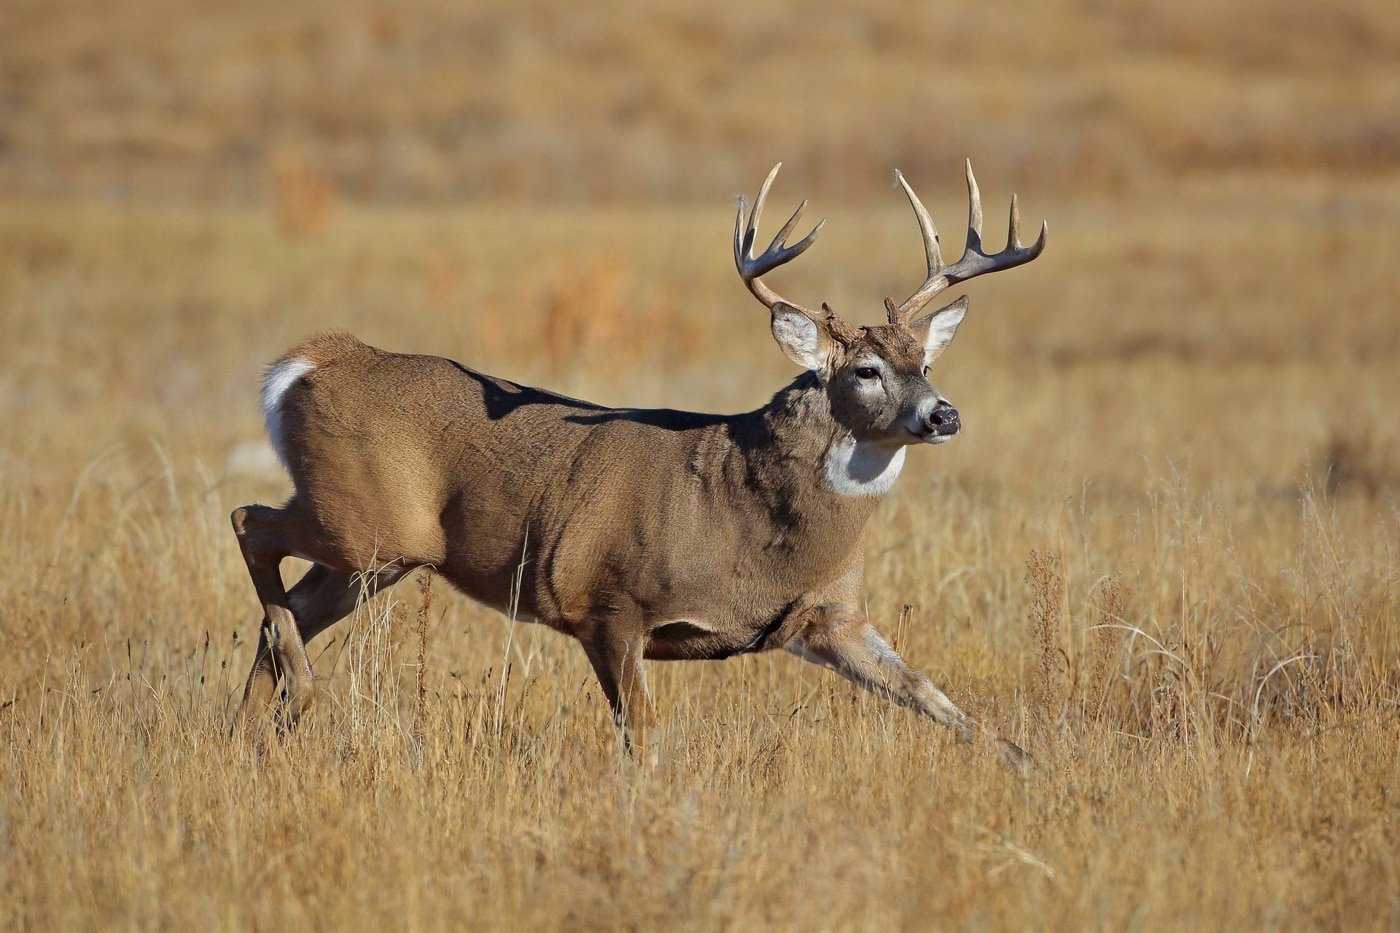 large buck deer running through a field